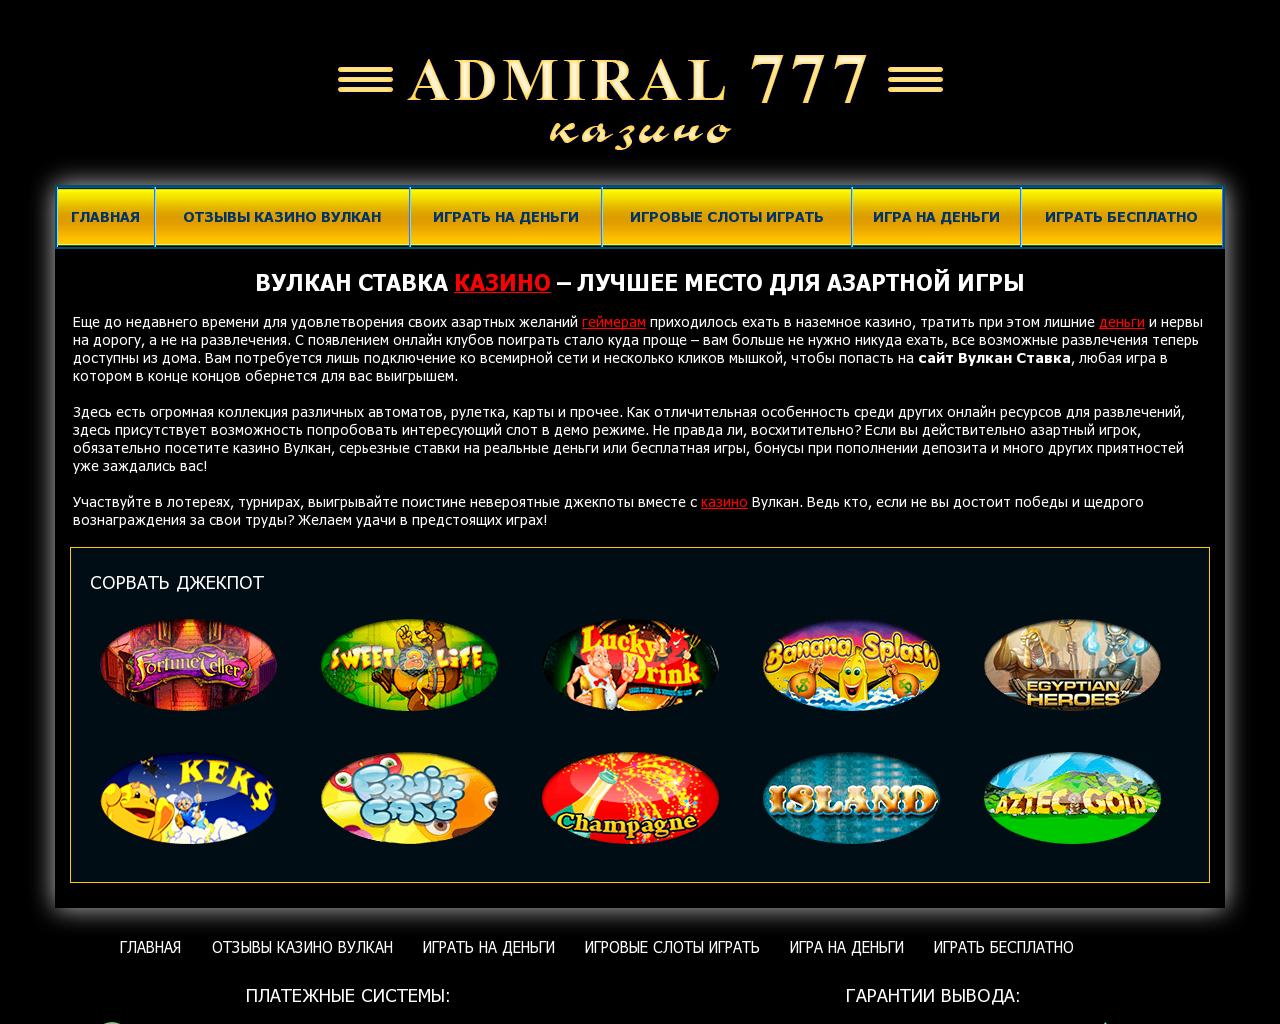 игровые автоматы адмирал 777 на деньги с выводом денег на карту сбербанка